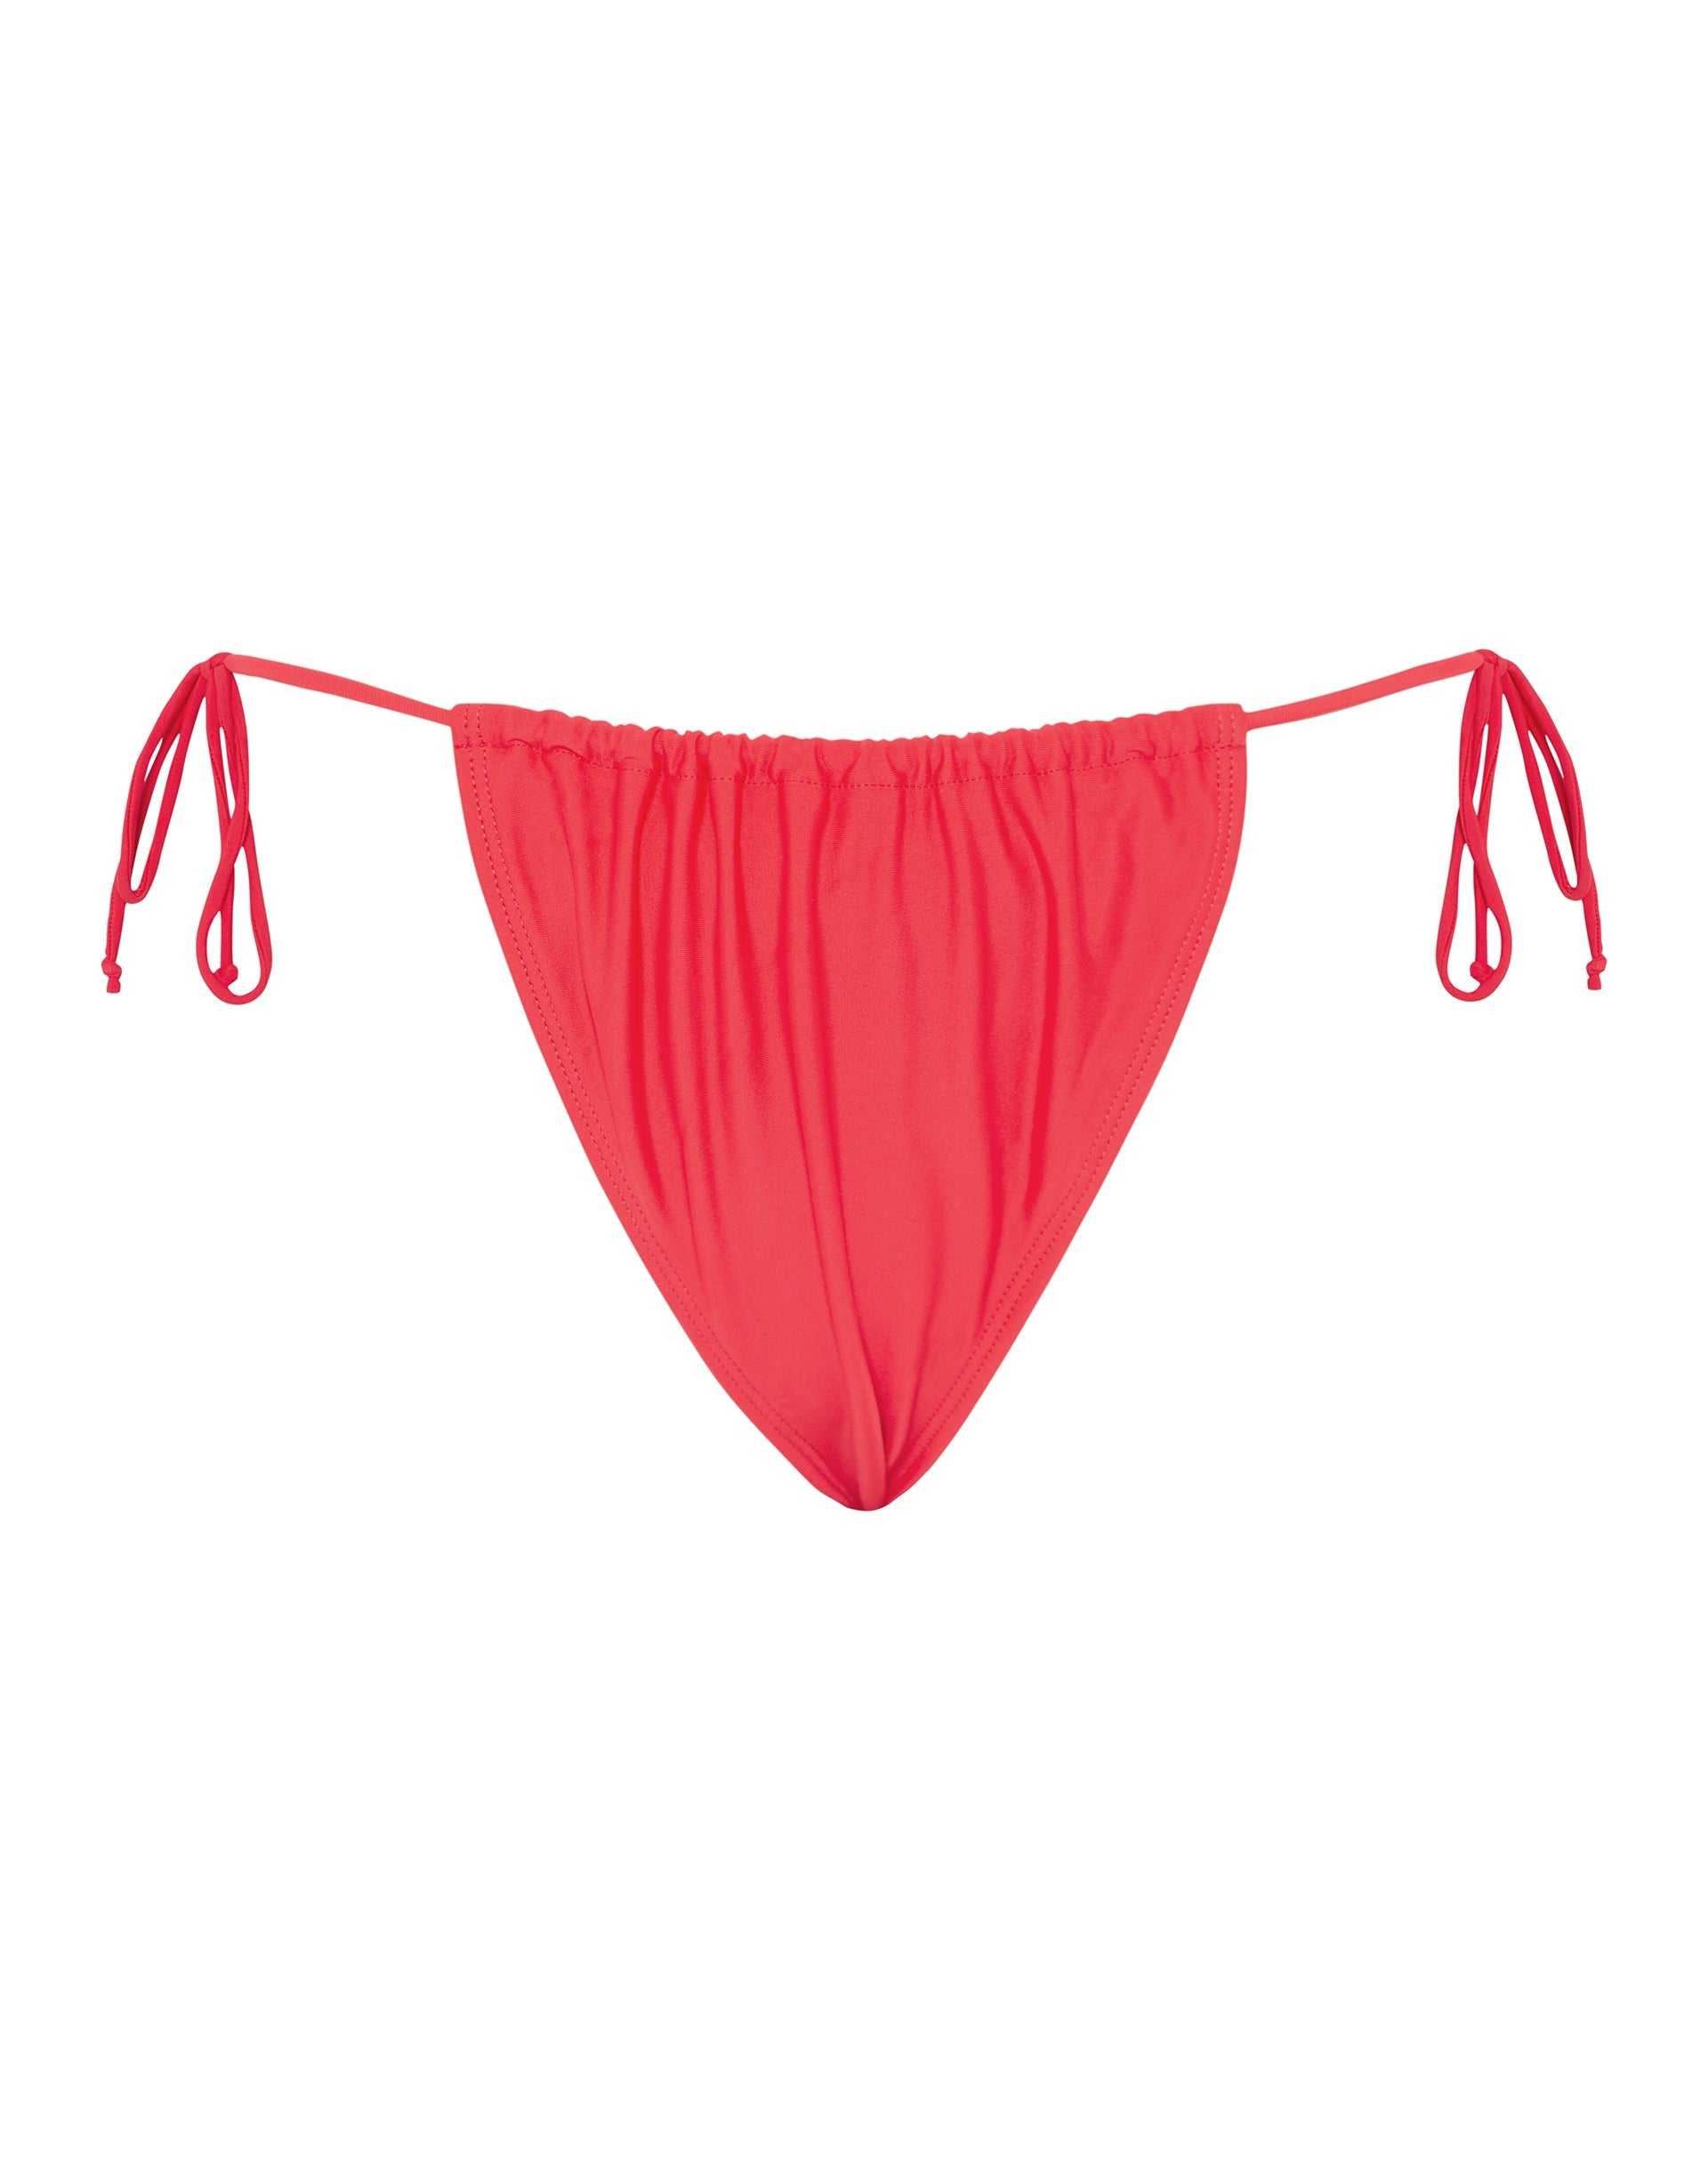 Imagen de la braguita de bikini Leyna en rojo escarlata